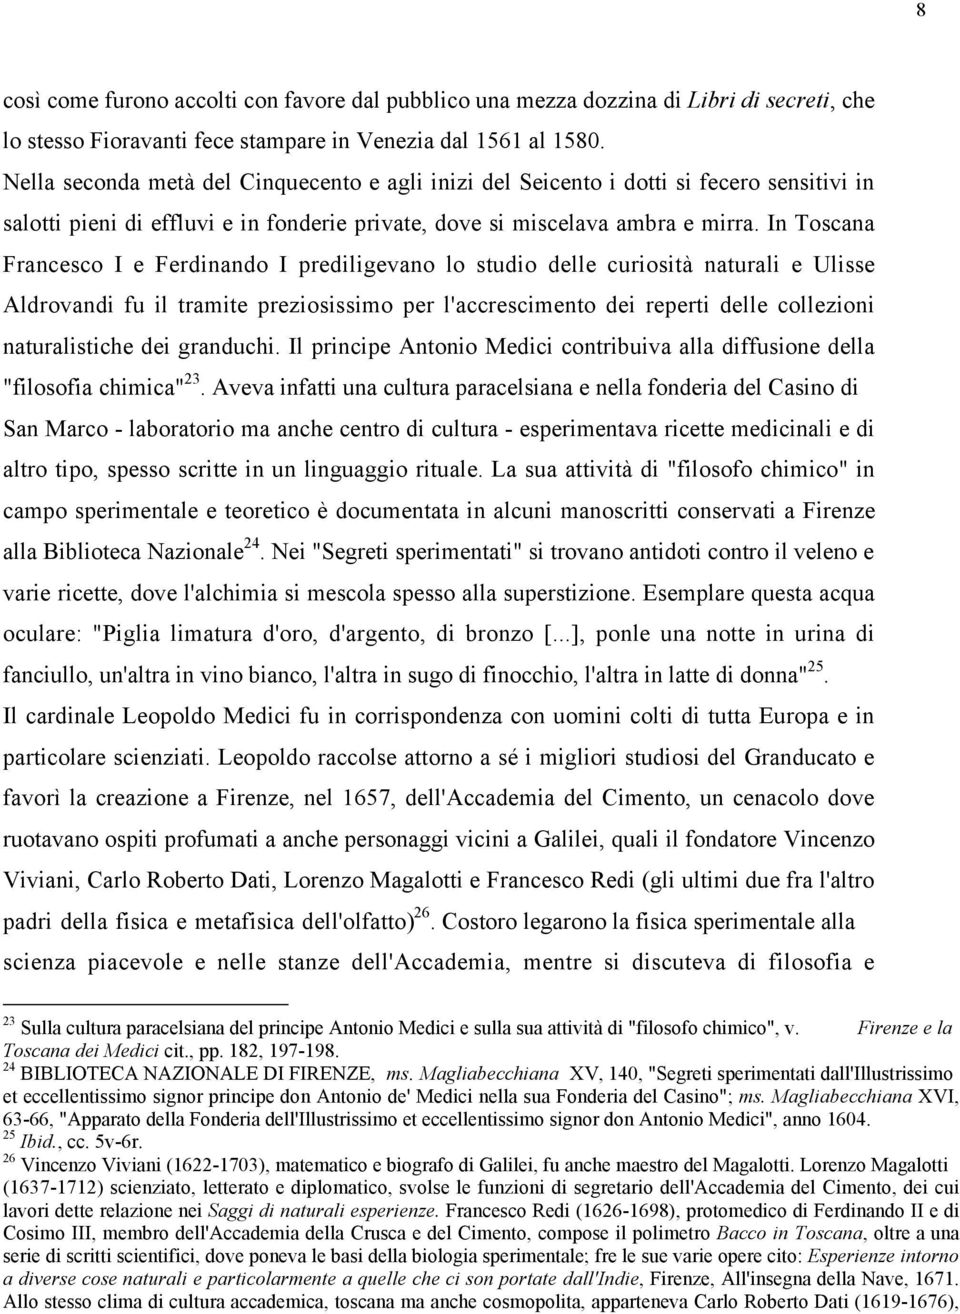 In Toscana Francesco I e Ferdinando I prediligevano lo studio delle curiosità naturali e Ulisse Aldrovandi fu il tramite preziosissimo per l'accrescimento dei reperti delle collezioni naturalistiche